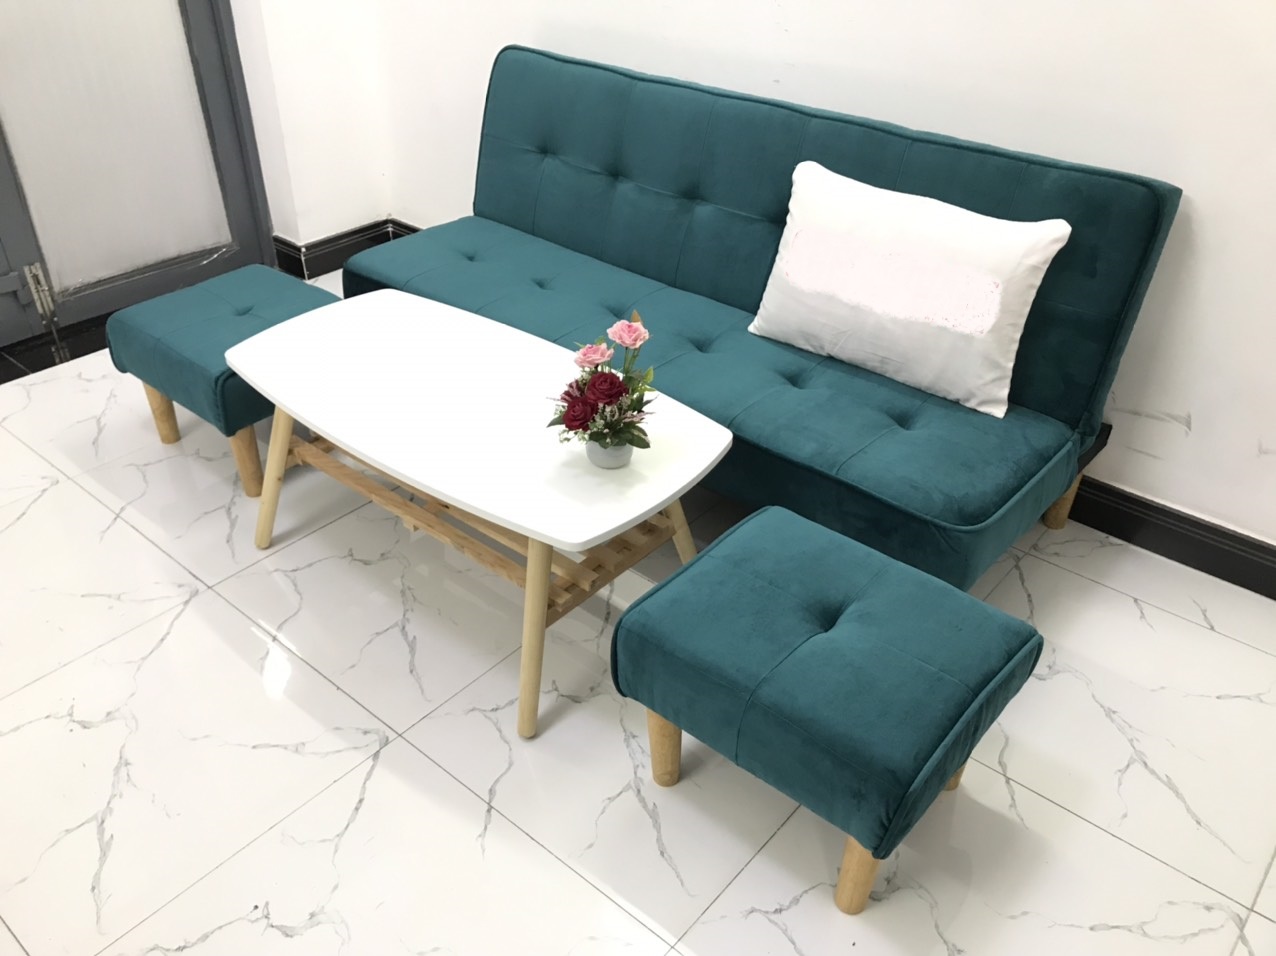 Bộ ghế sofa bed 1m7x90, sofa giường phòng khách sivali06, salon sivali06